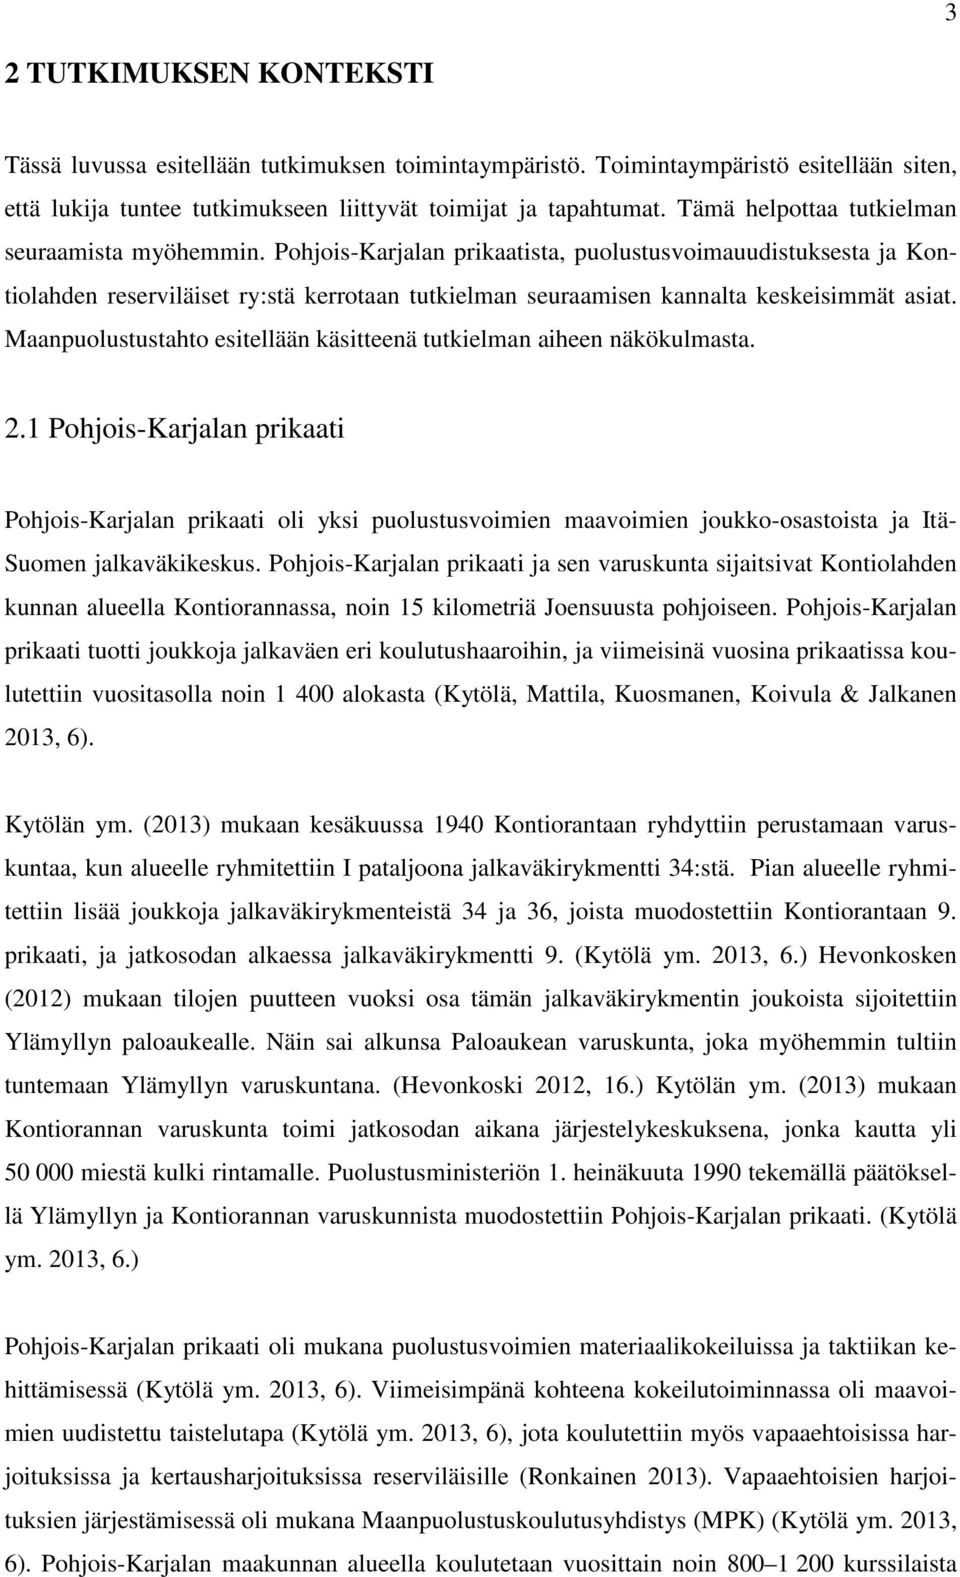 Pohjois-Karjalan prikaatista, puolustusvoimauudistuksesta ja Kontiolahden reserviläiset ry:stä kerrotaan tutkielman seuraamisen kannalta keskeisimmät asiat.